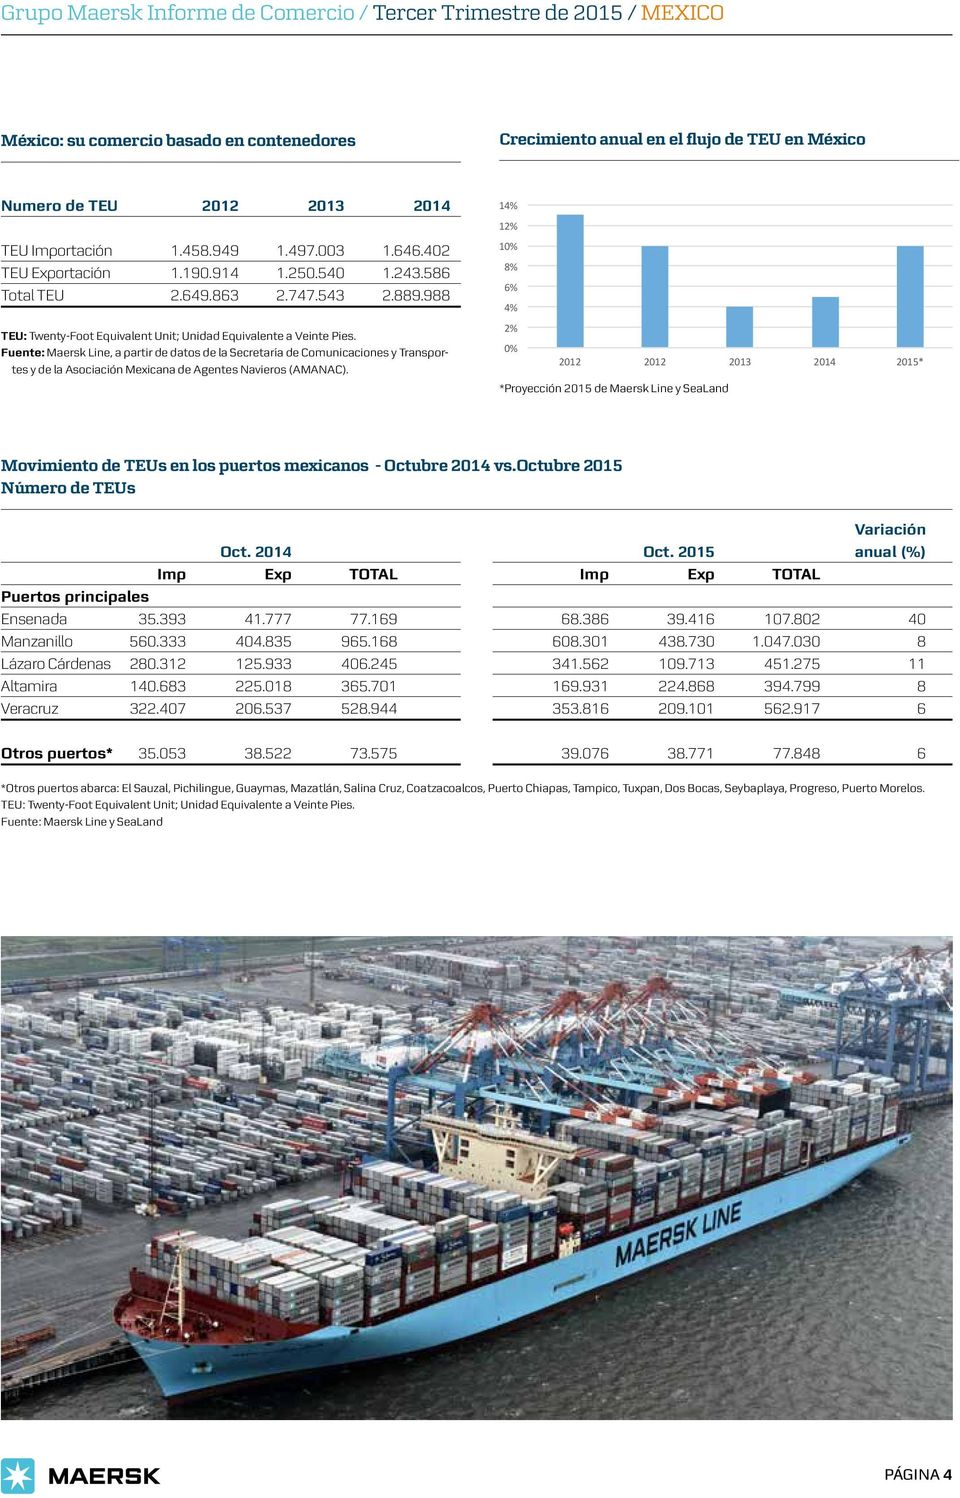 Fuente: Maersk Line, a partir de datos de la Secretaría de Comunicaciones y Transportes y de la Asociación Mexicana de Agentes Navieros (AMANAC).